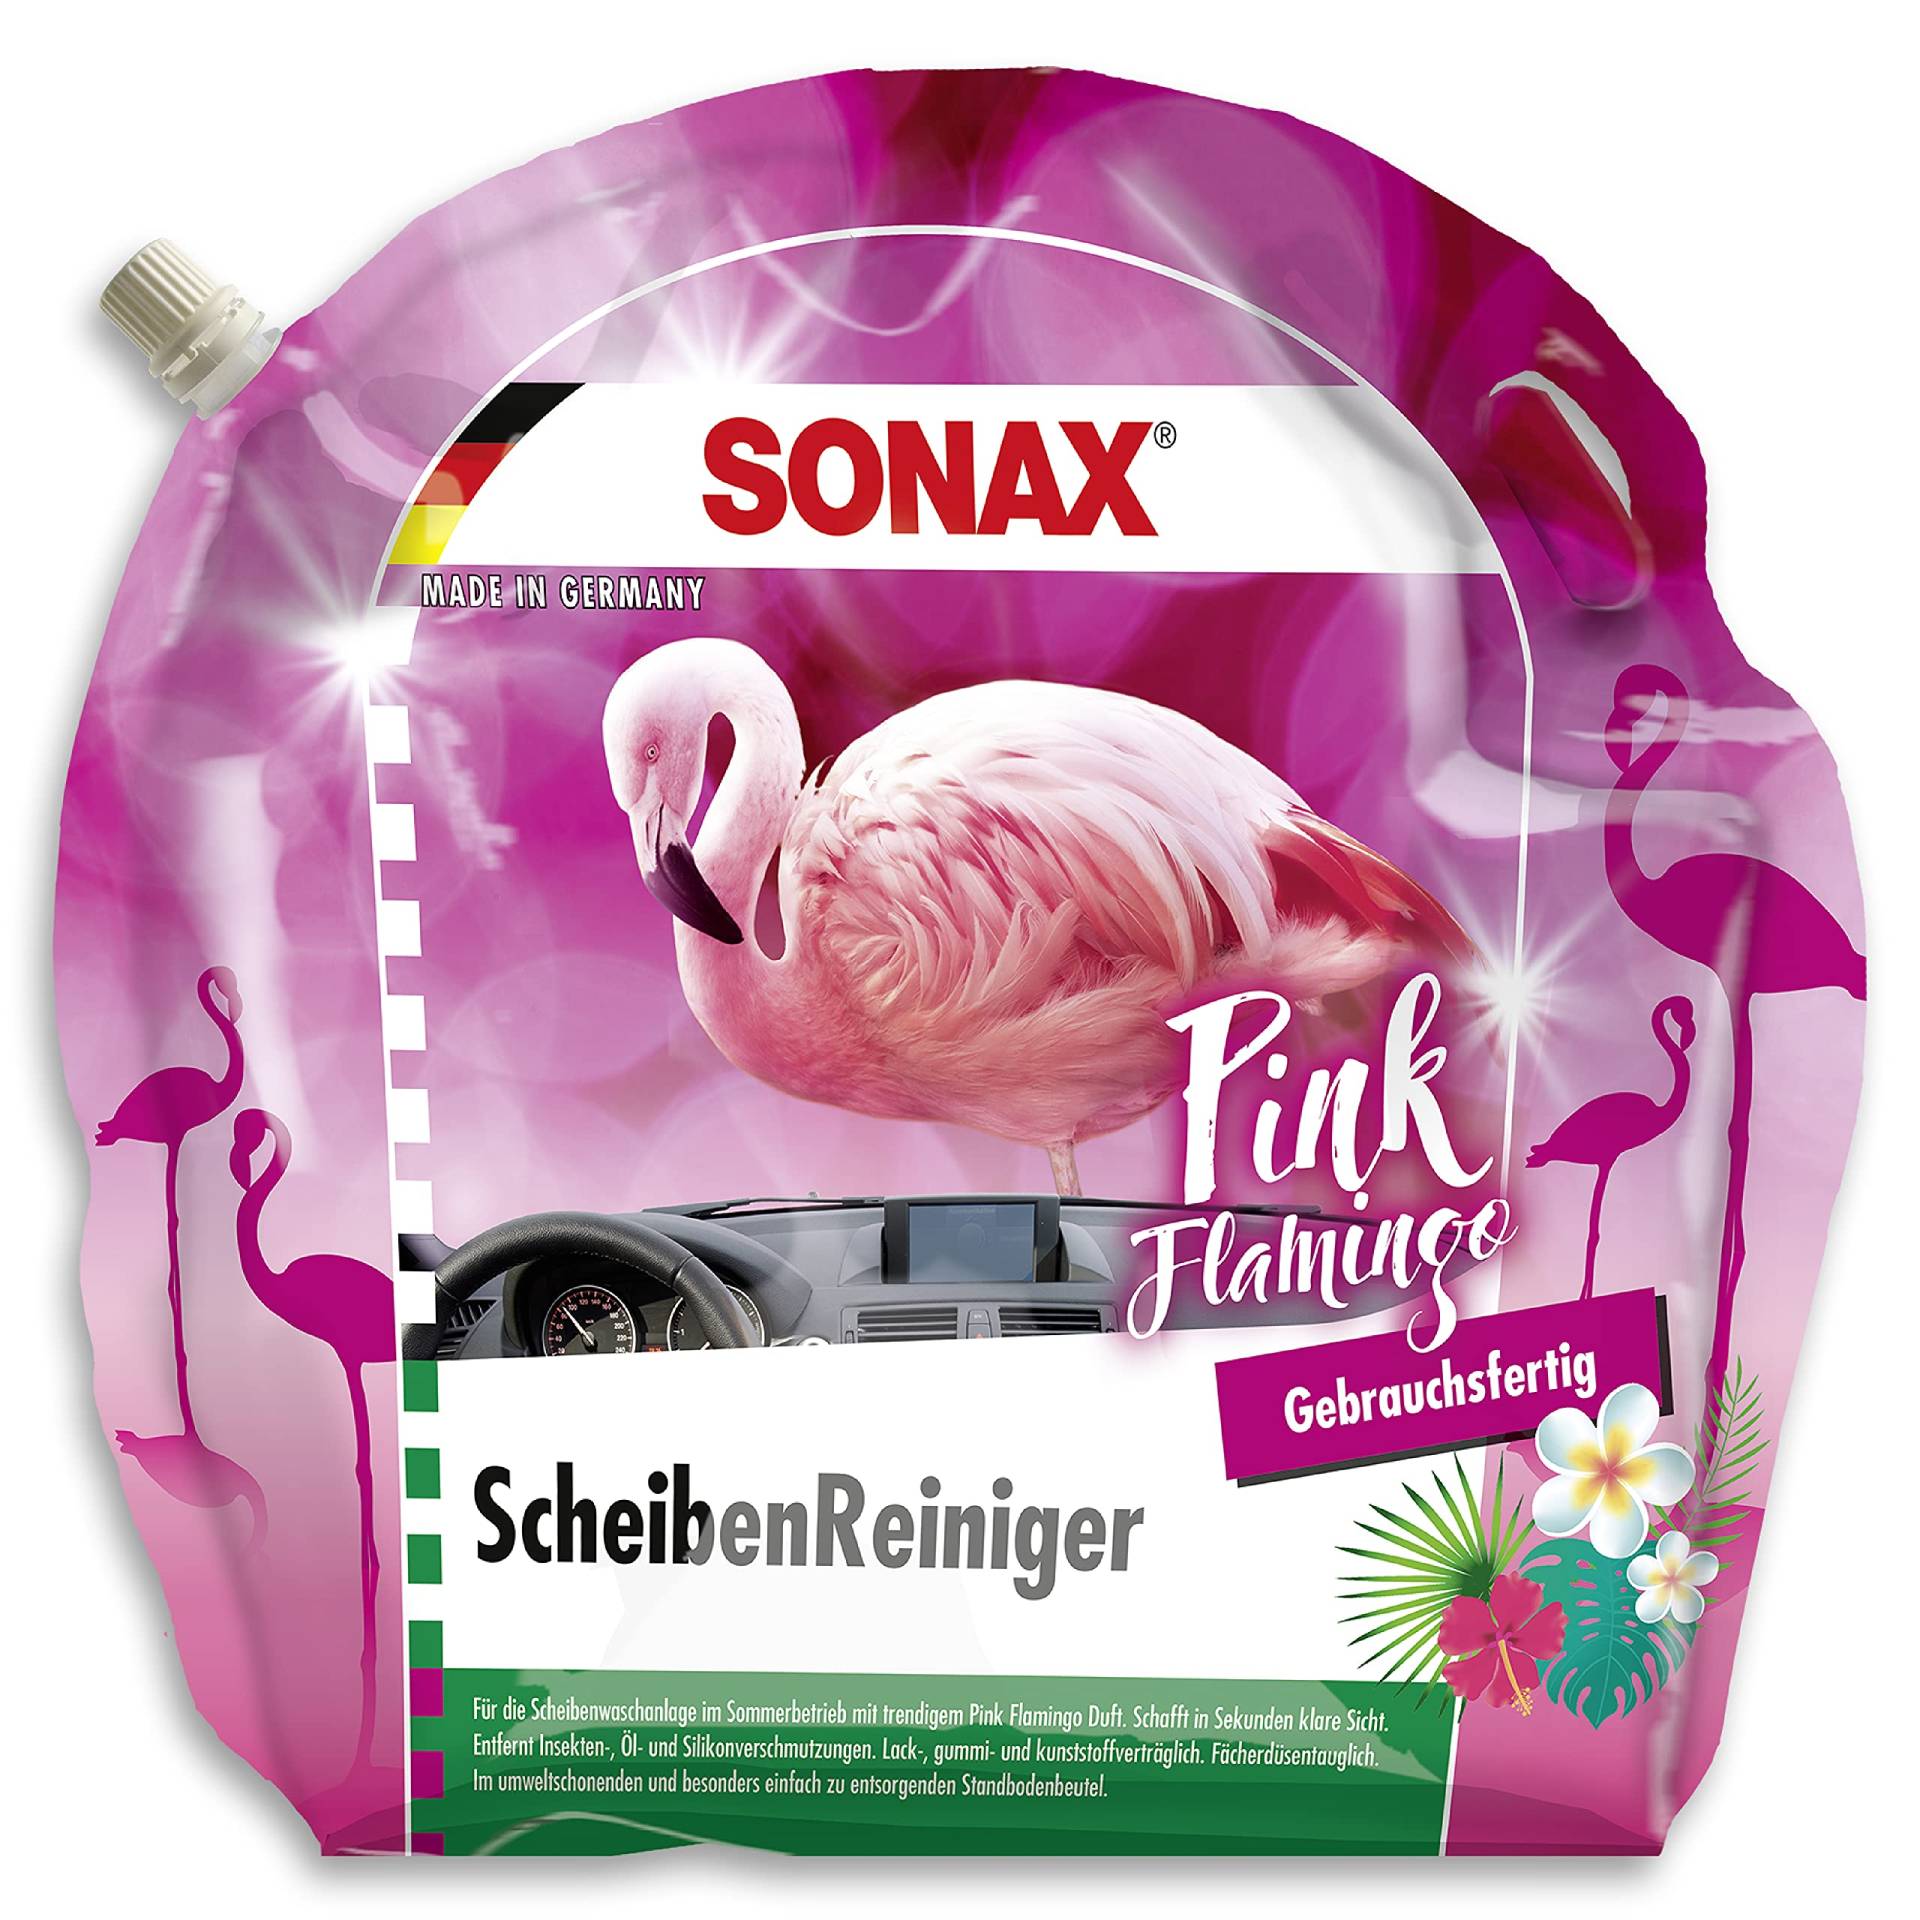 SONAX ScheibenReiniger gebrauchsfertig Pink Flamingo (3 Liter) sekundenschnell klare Sicht ohne Streifen und Schlieren | Art-Nr. 03894410 von SONAX